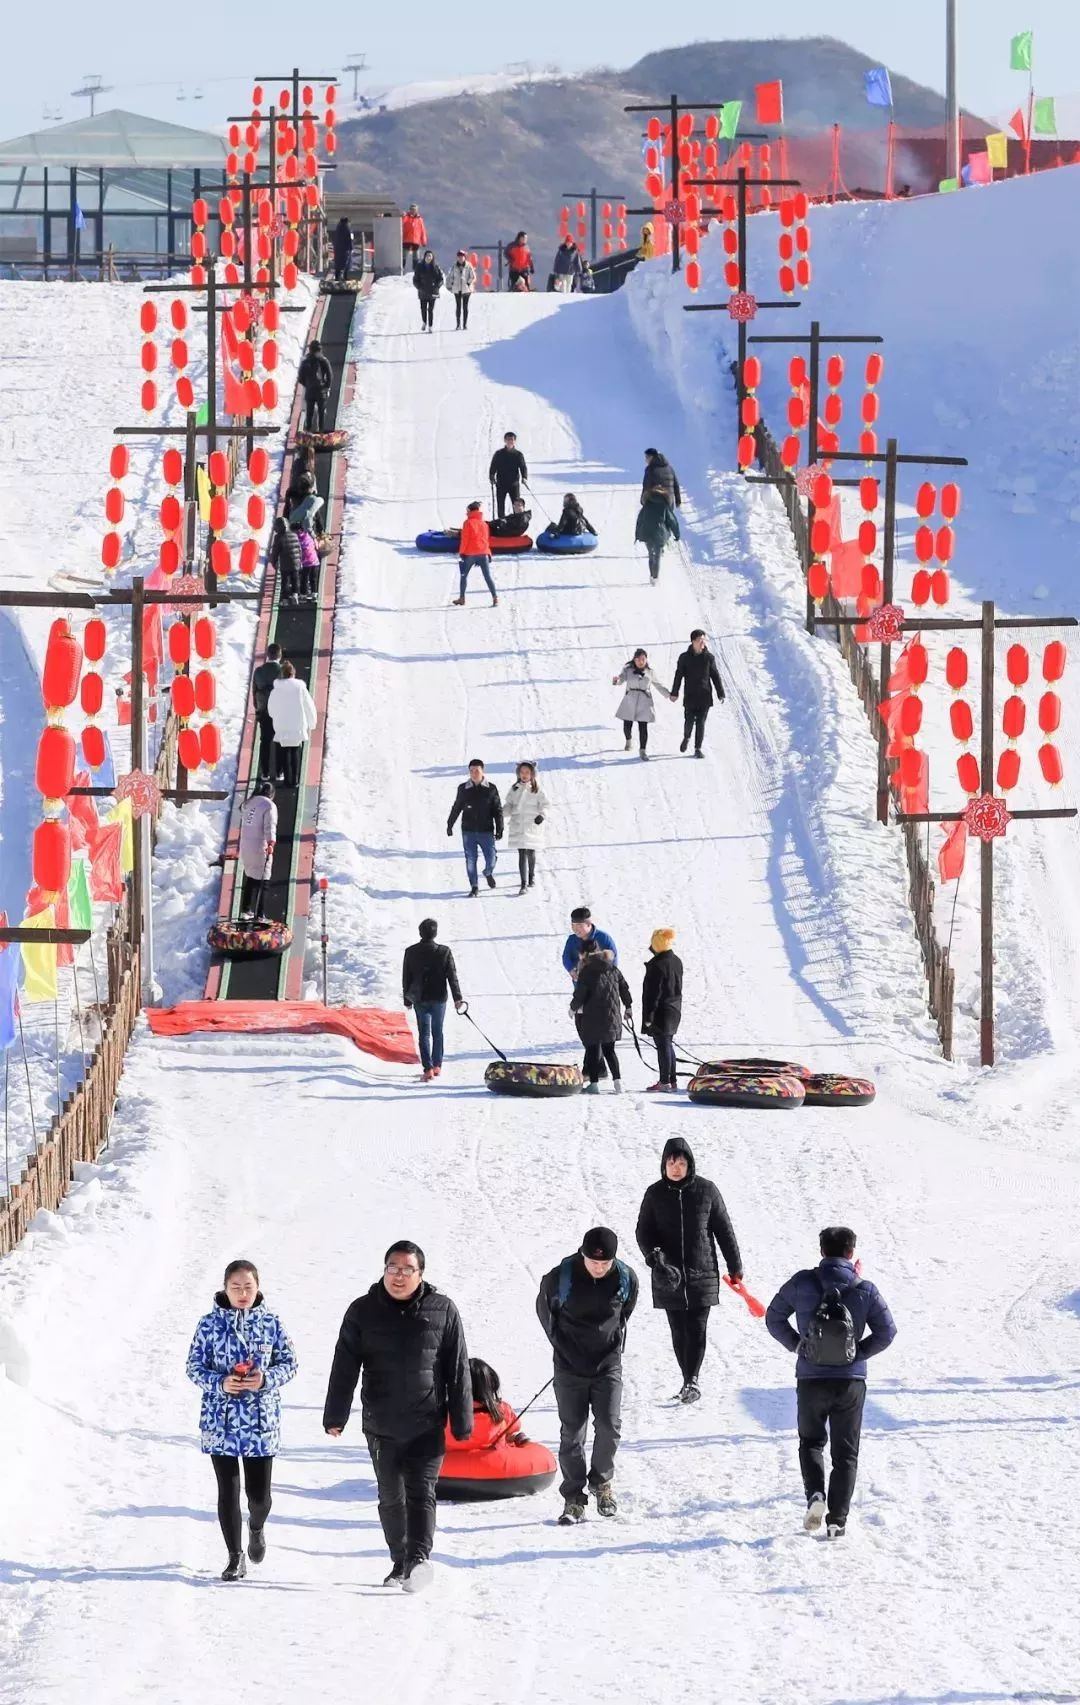 狼牙山滑雪场白雪皑皑,太美了!